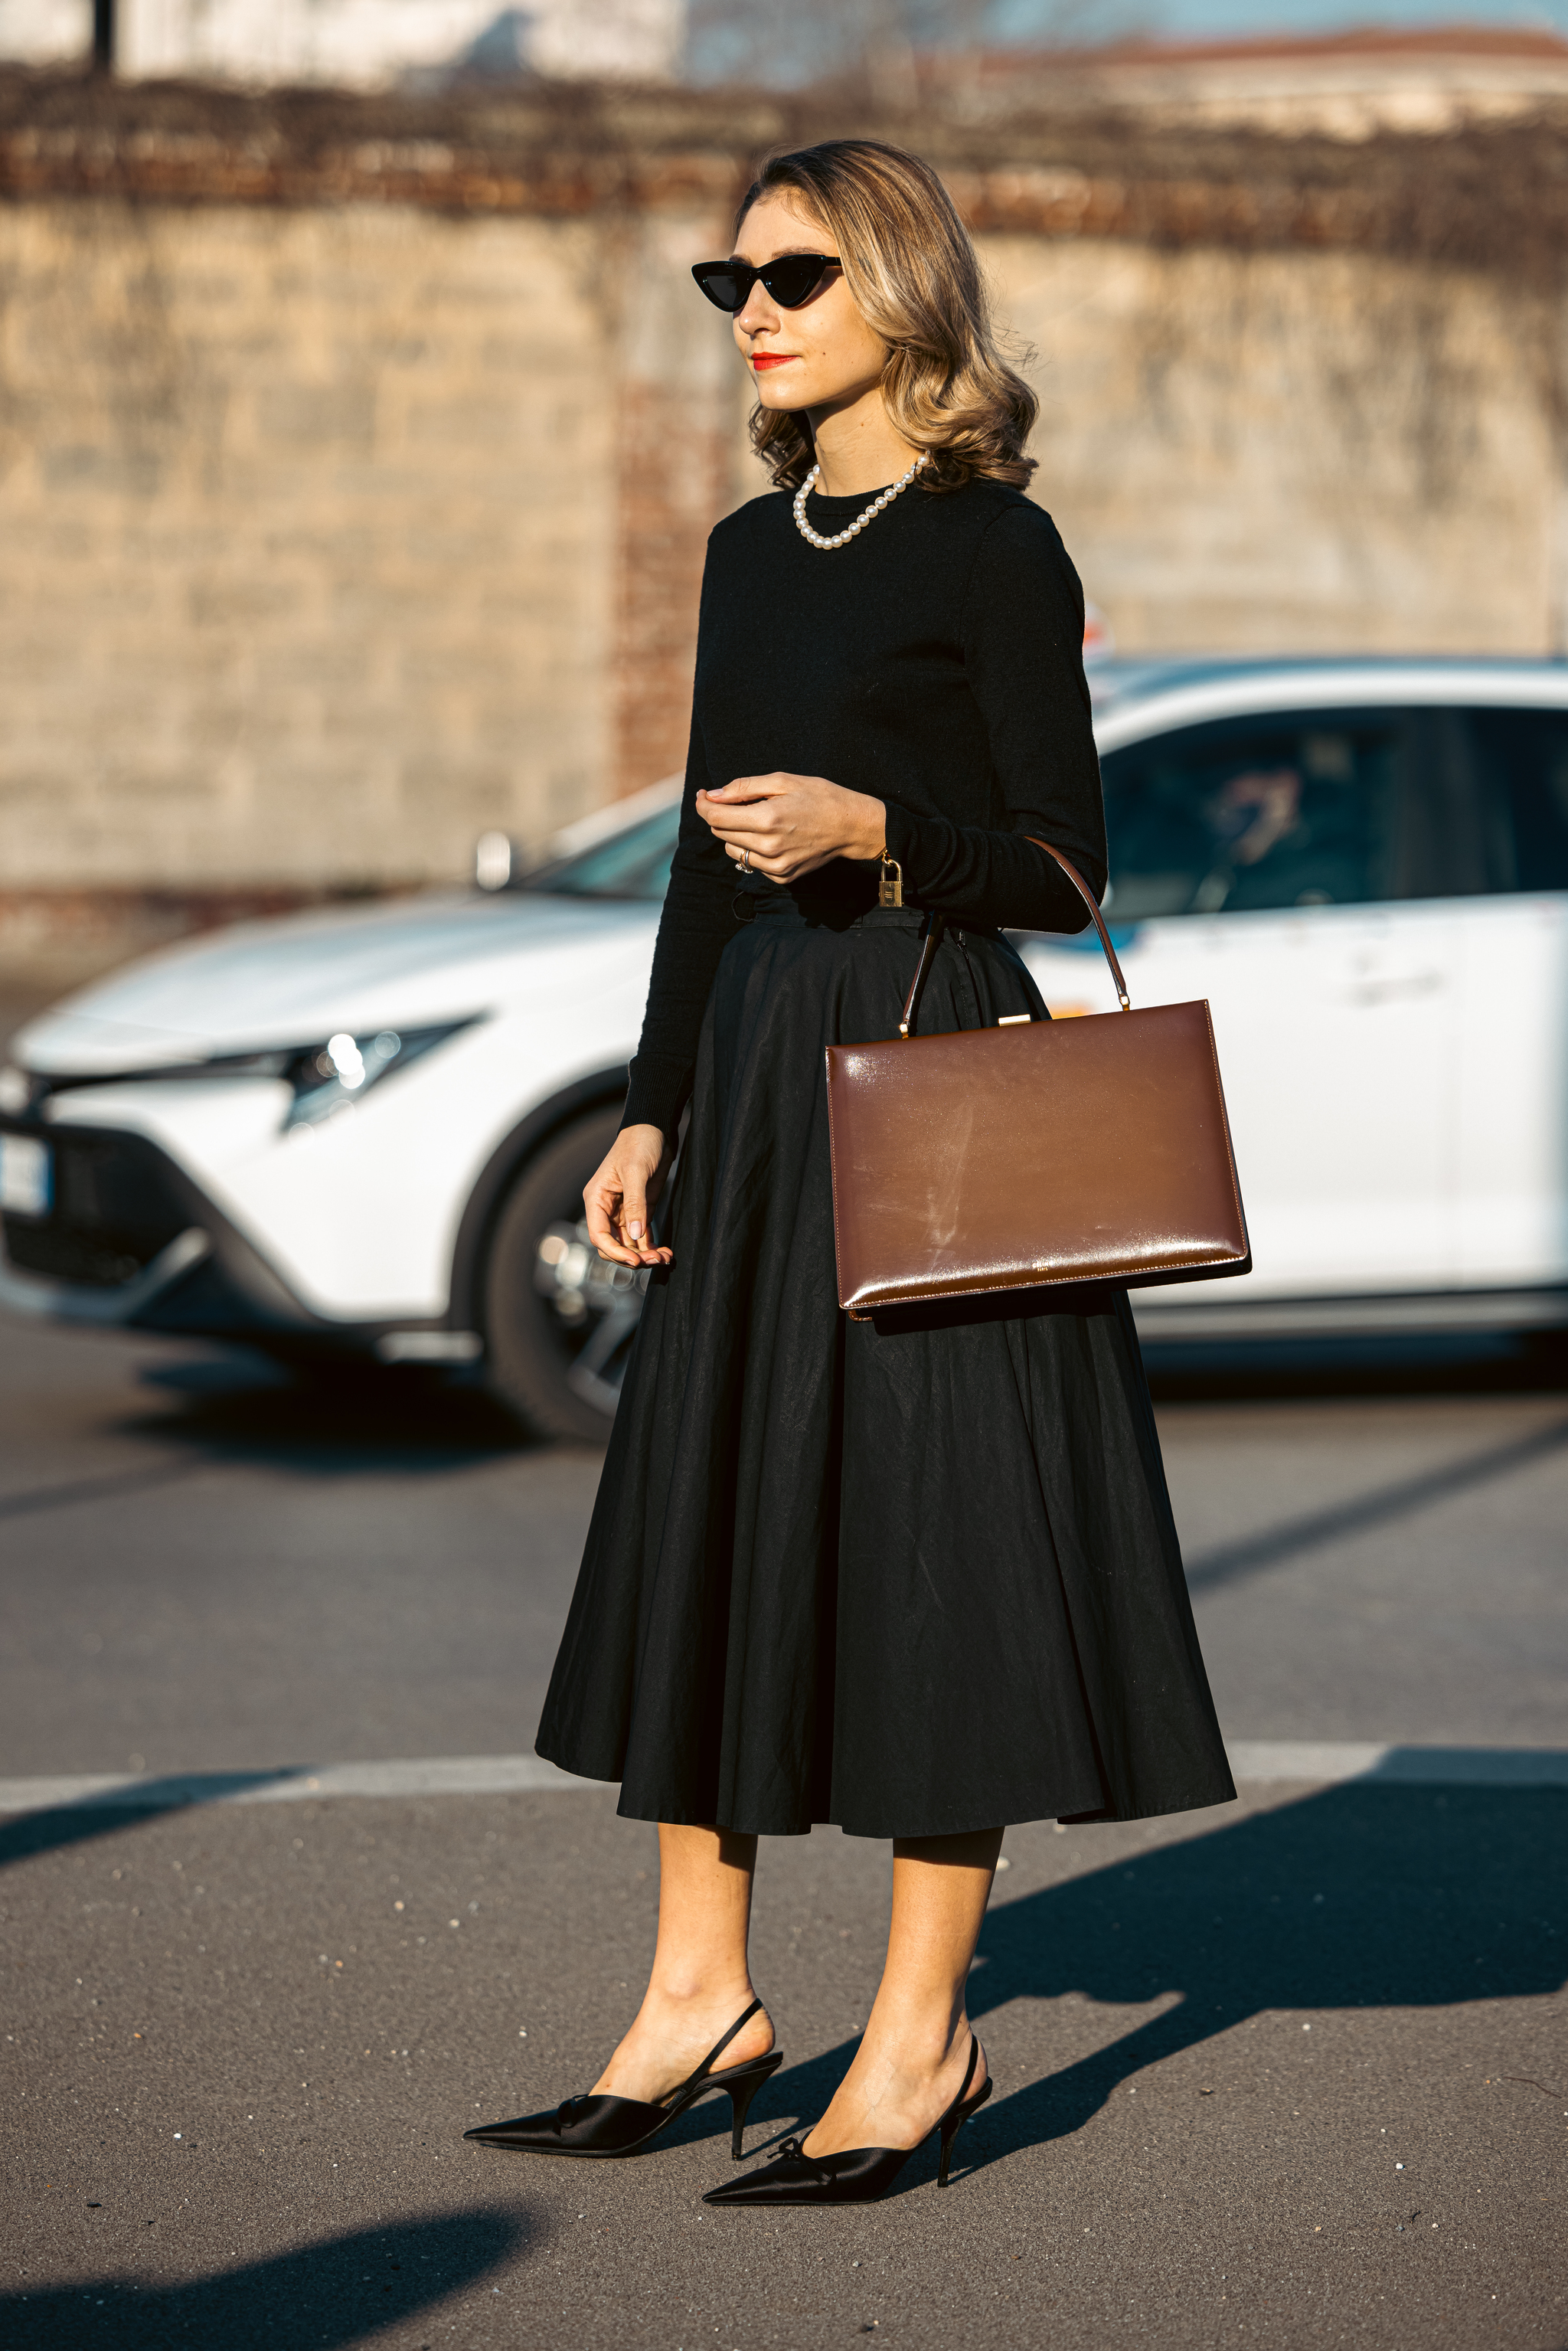 Jenny Walton con falda midi negra, una prenda perfecta para comprar en las rebajas de invierno.